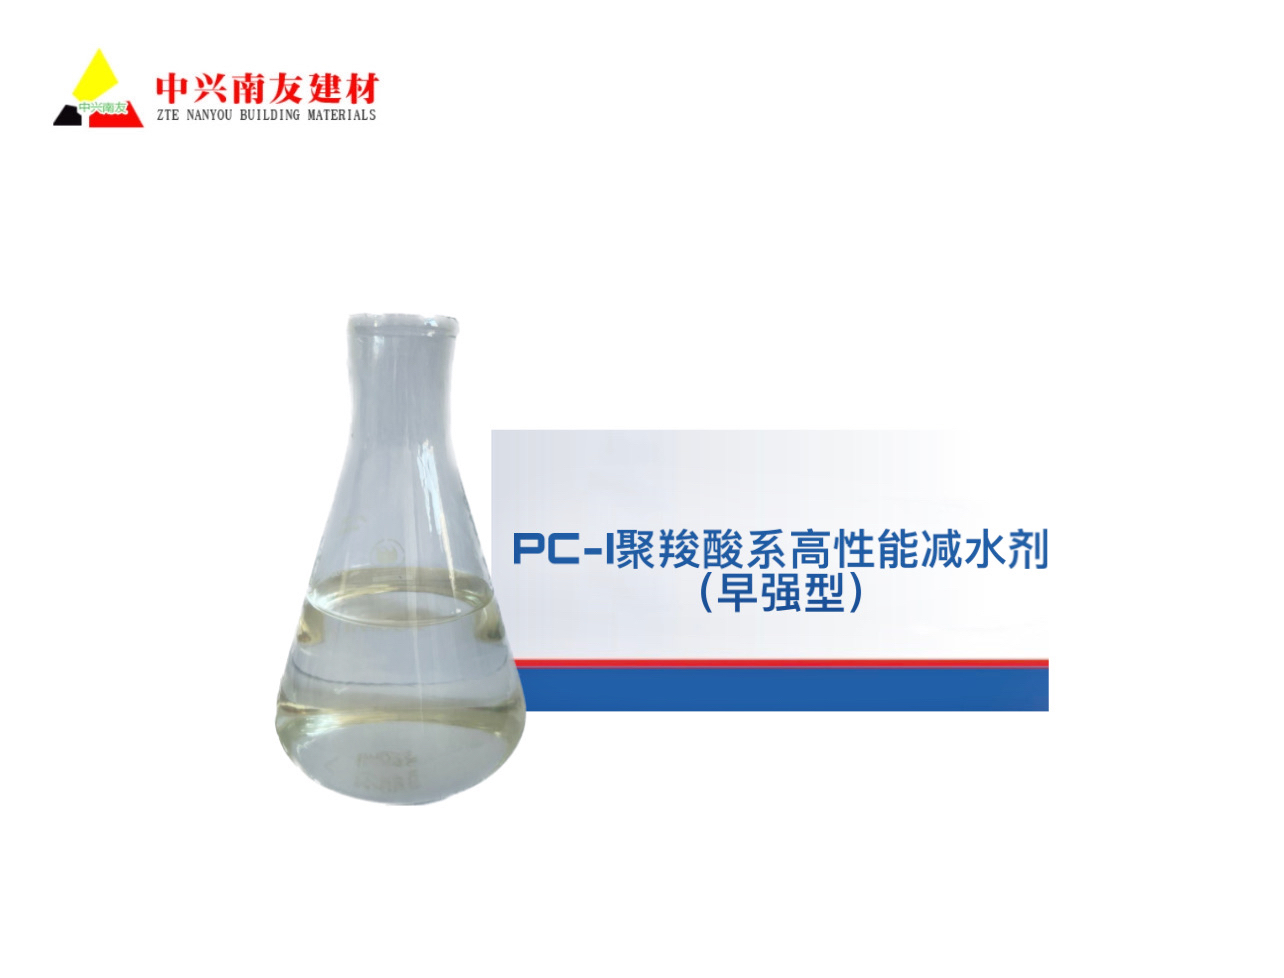 PC-I聚羧酸系高性能减水剂（早强型）